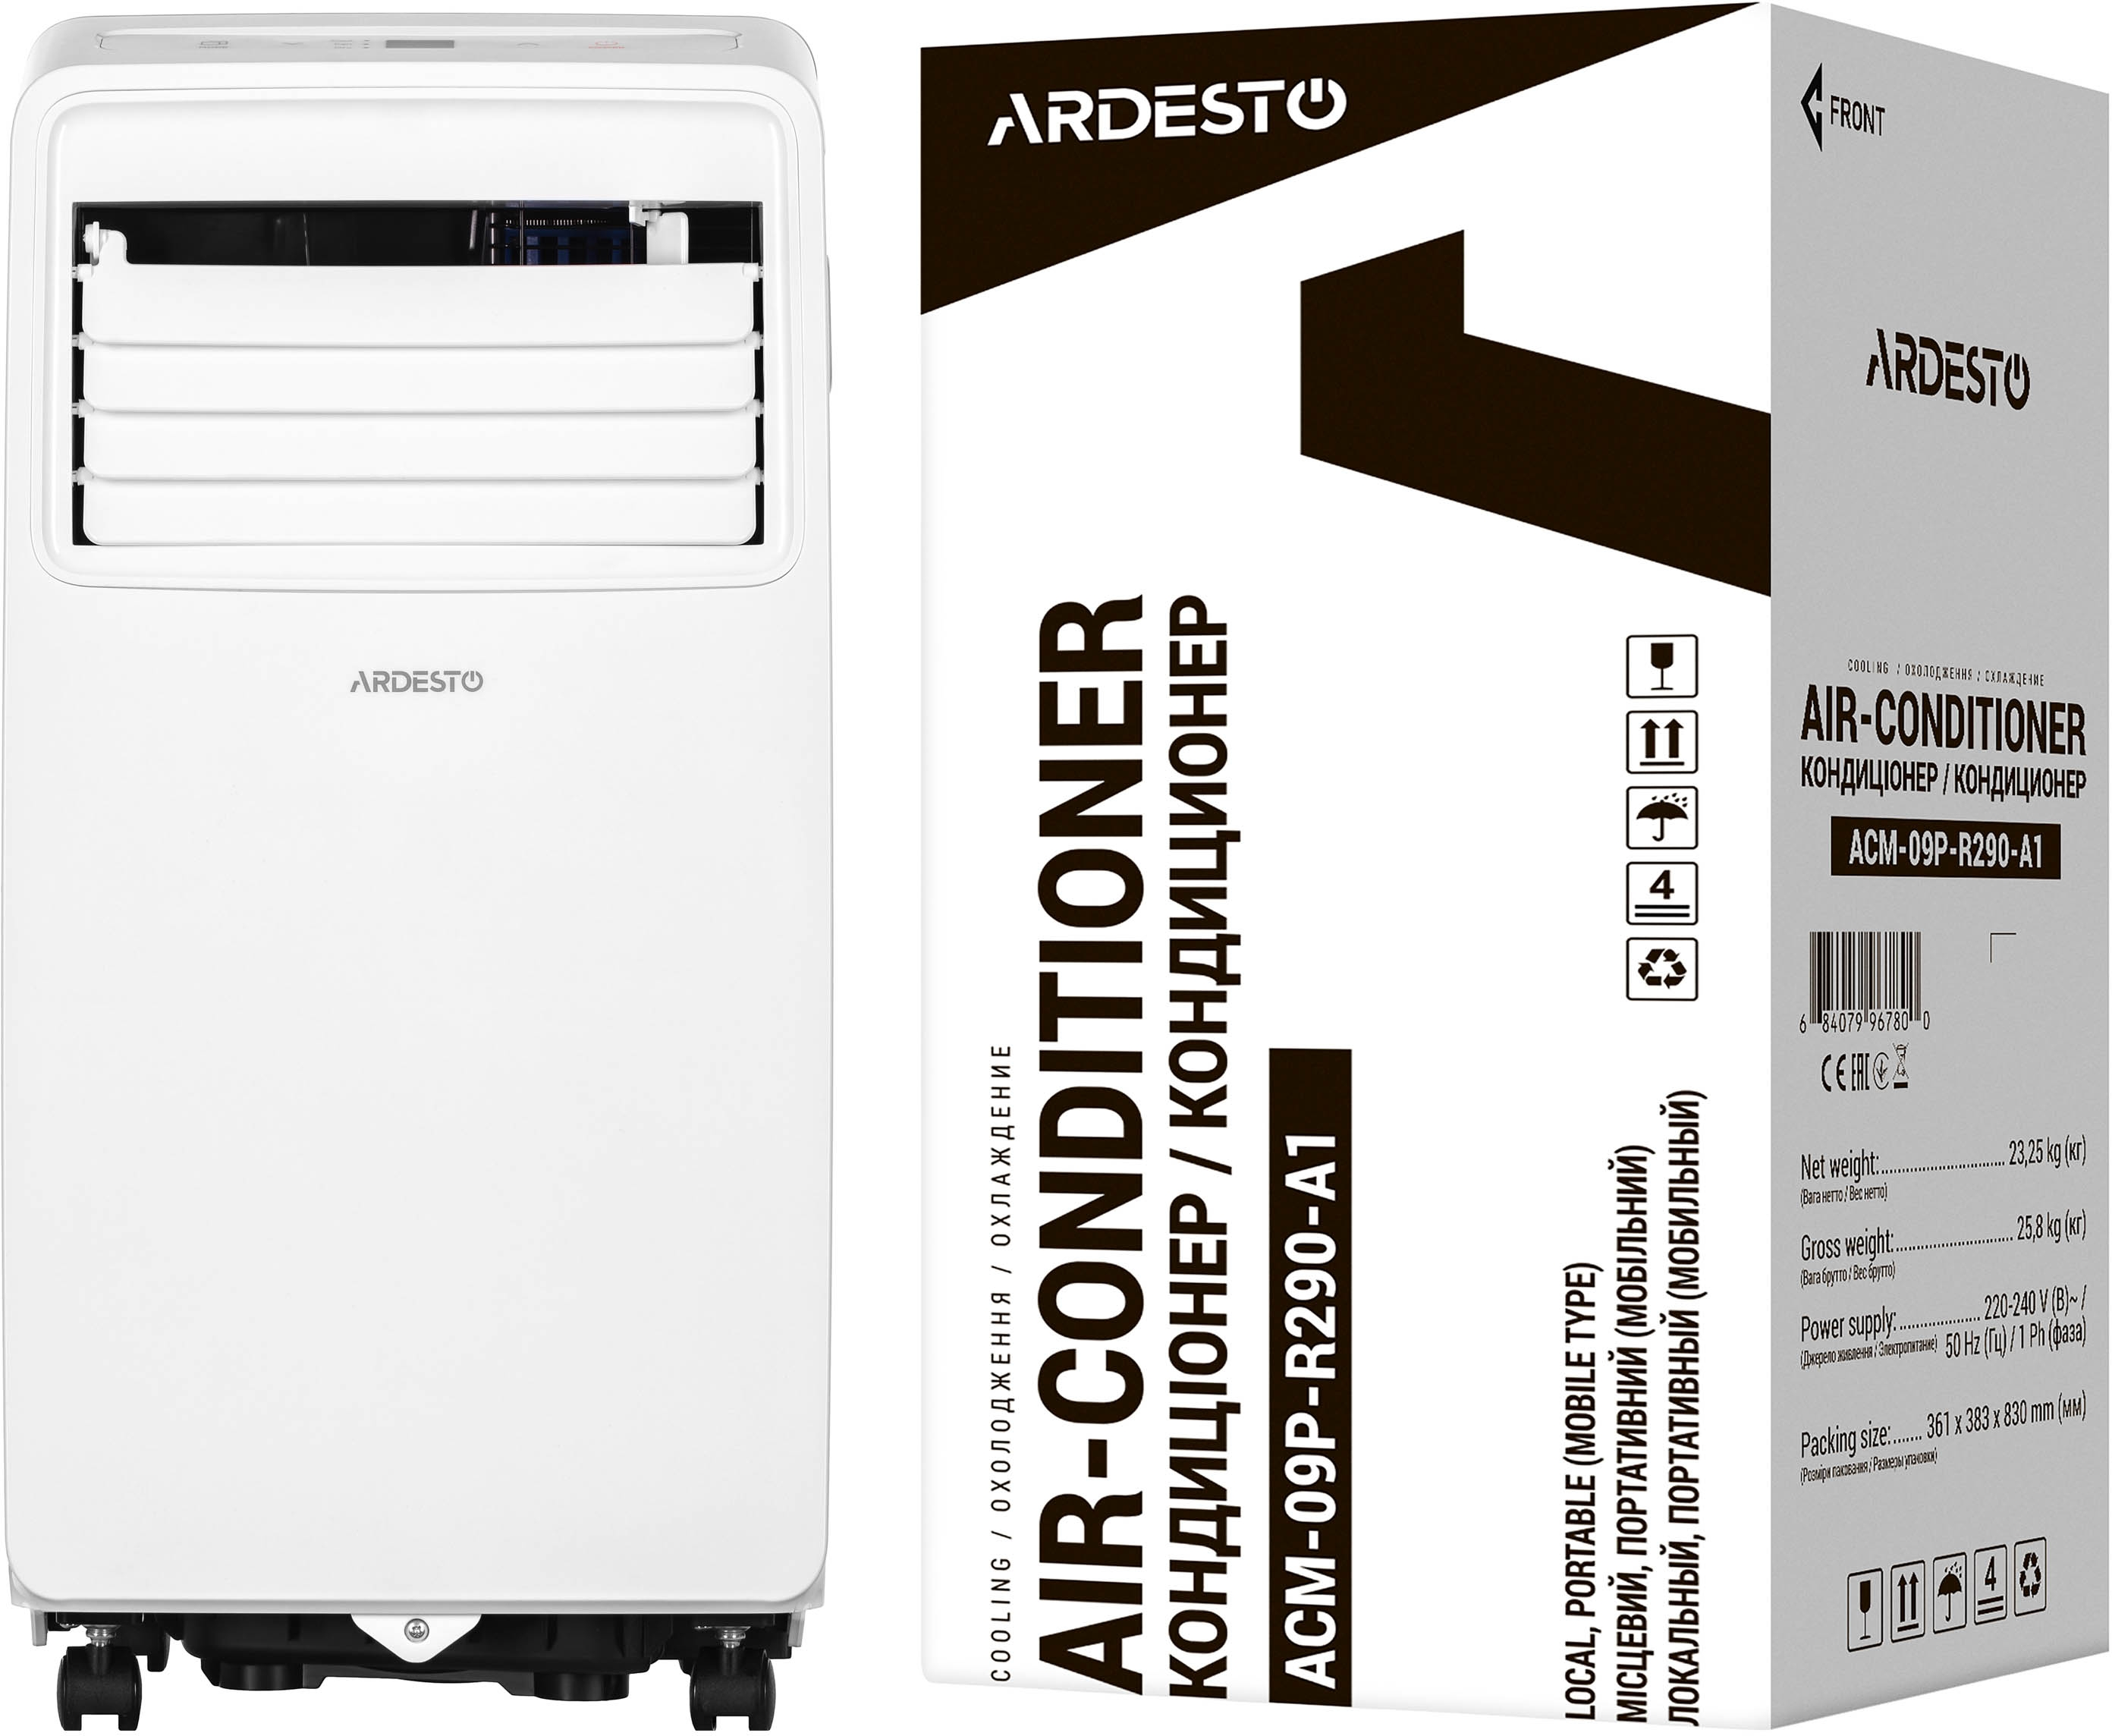 Мобильный кондиционер Ardesto ACM-09P-R290-A1 фото 12